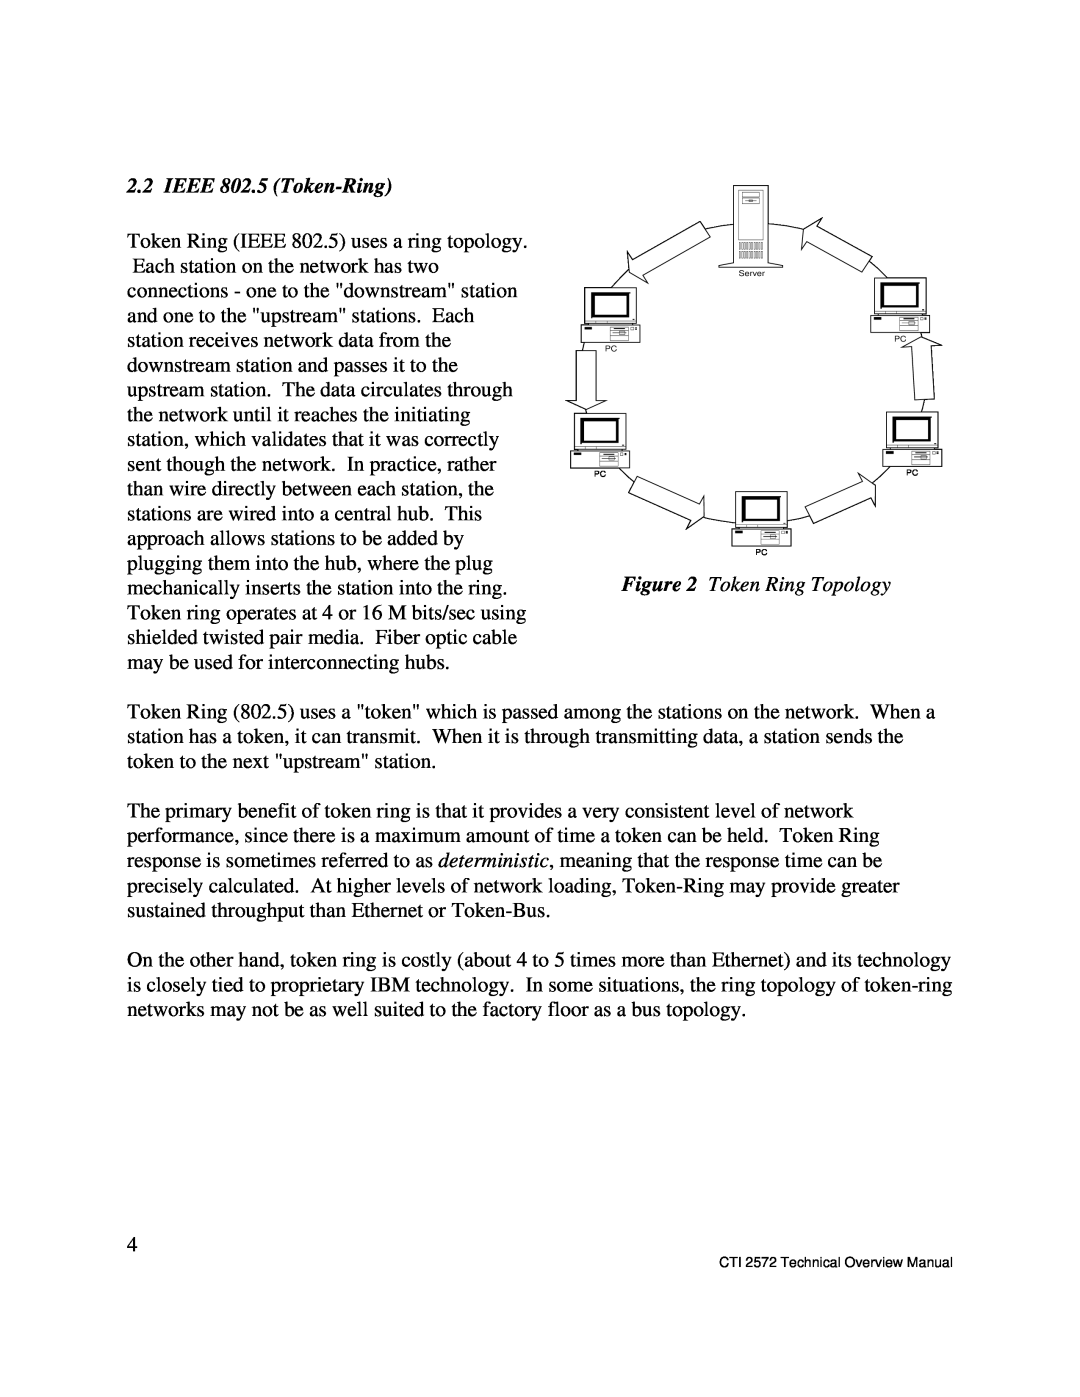 IBM CTI 2572 manual IEEE 802.5 Token-Ring, Token Ring Topology 